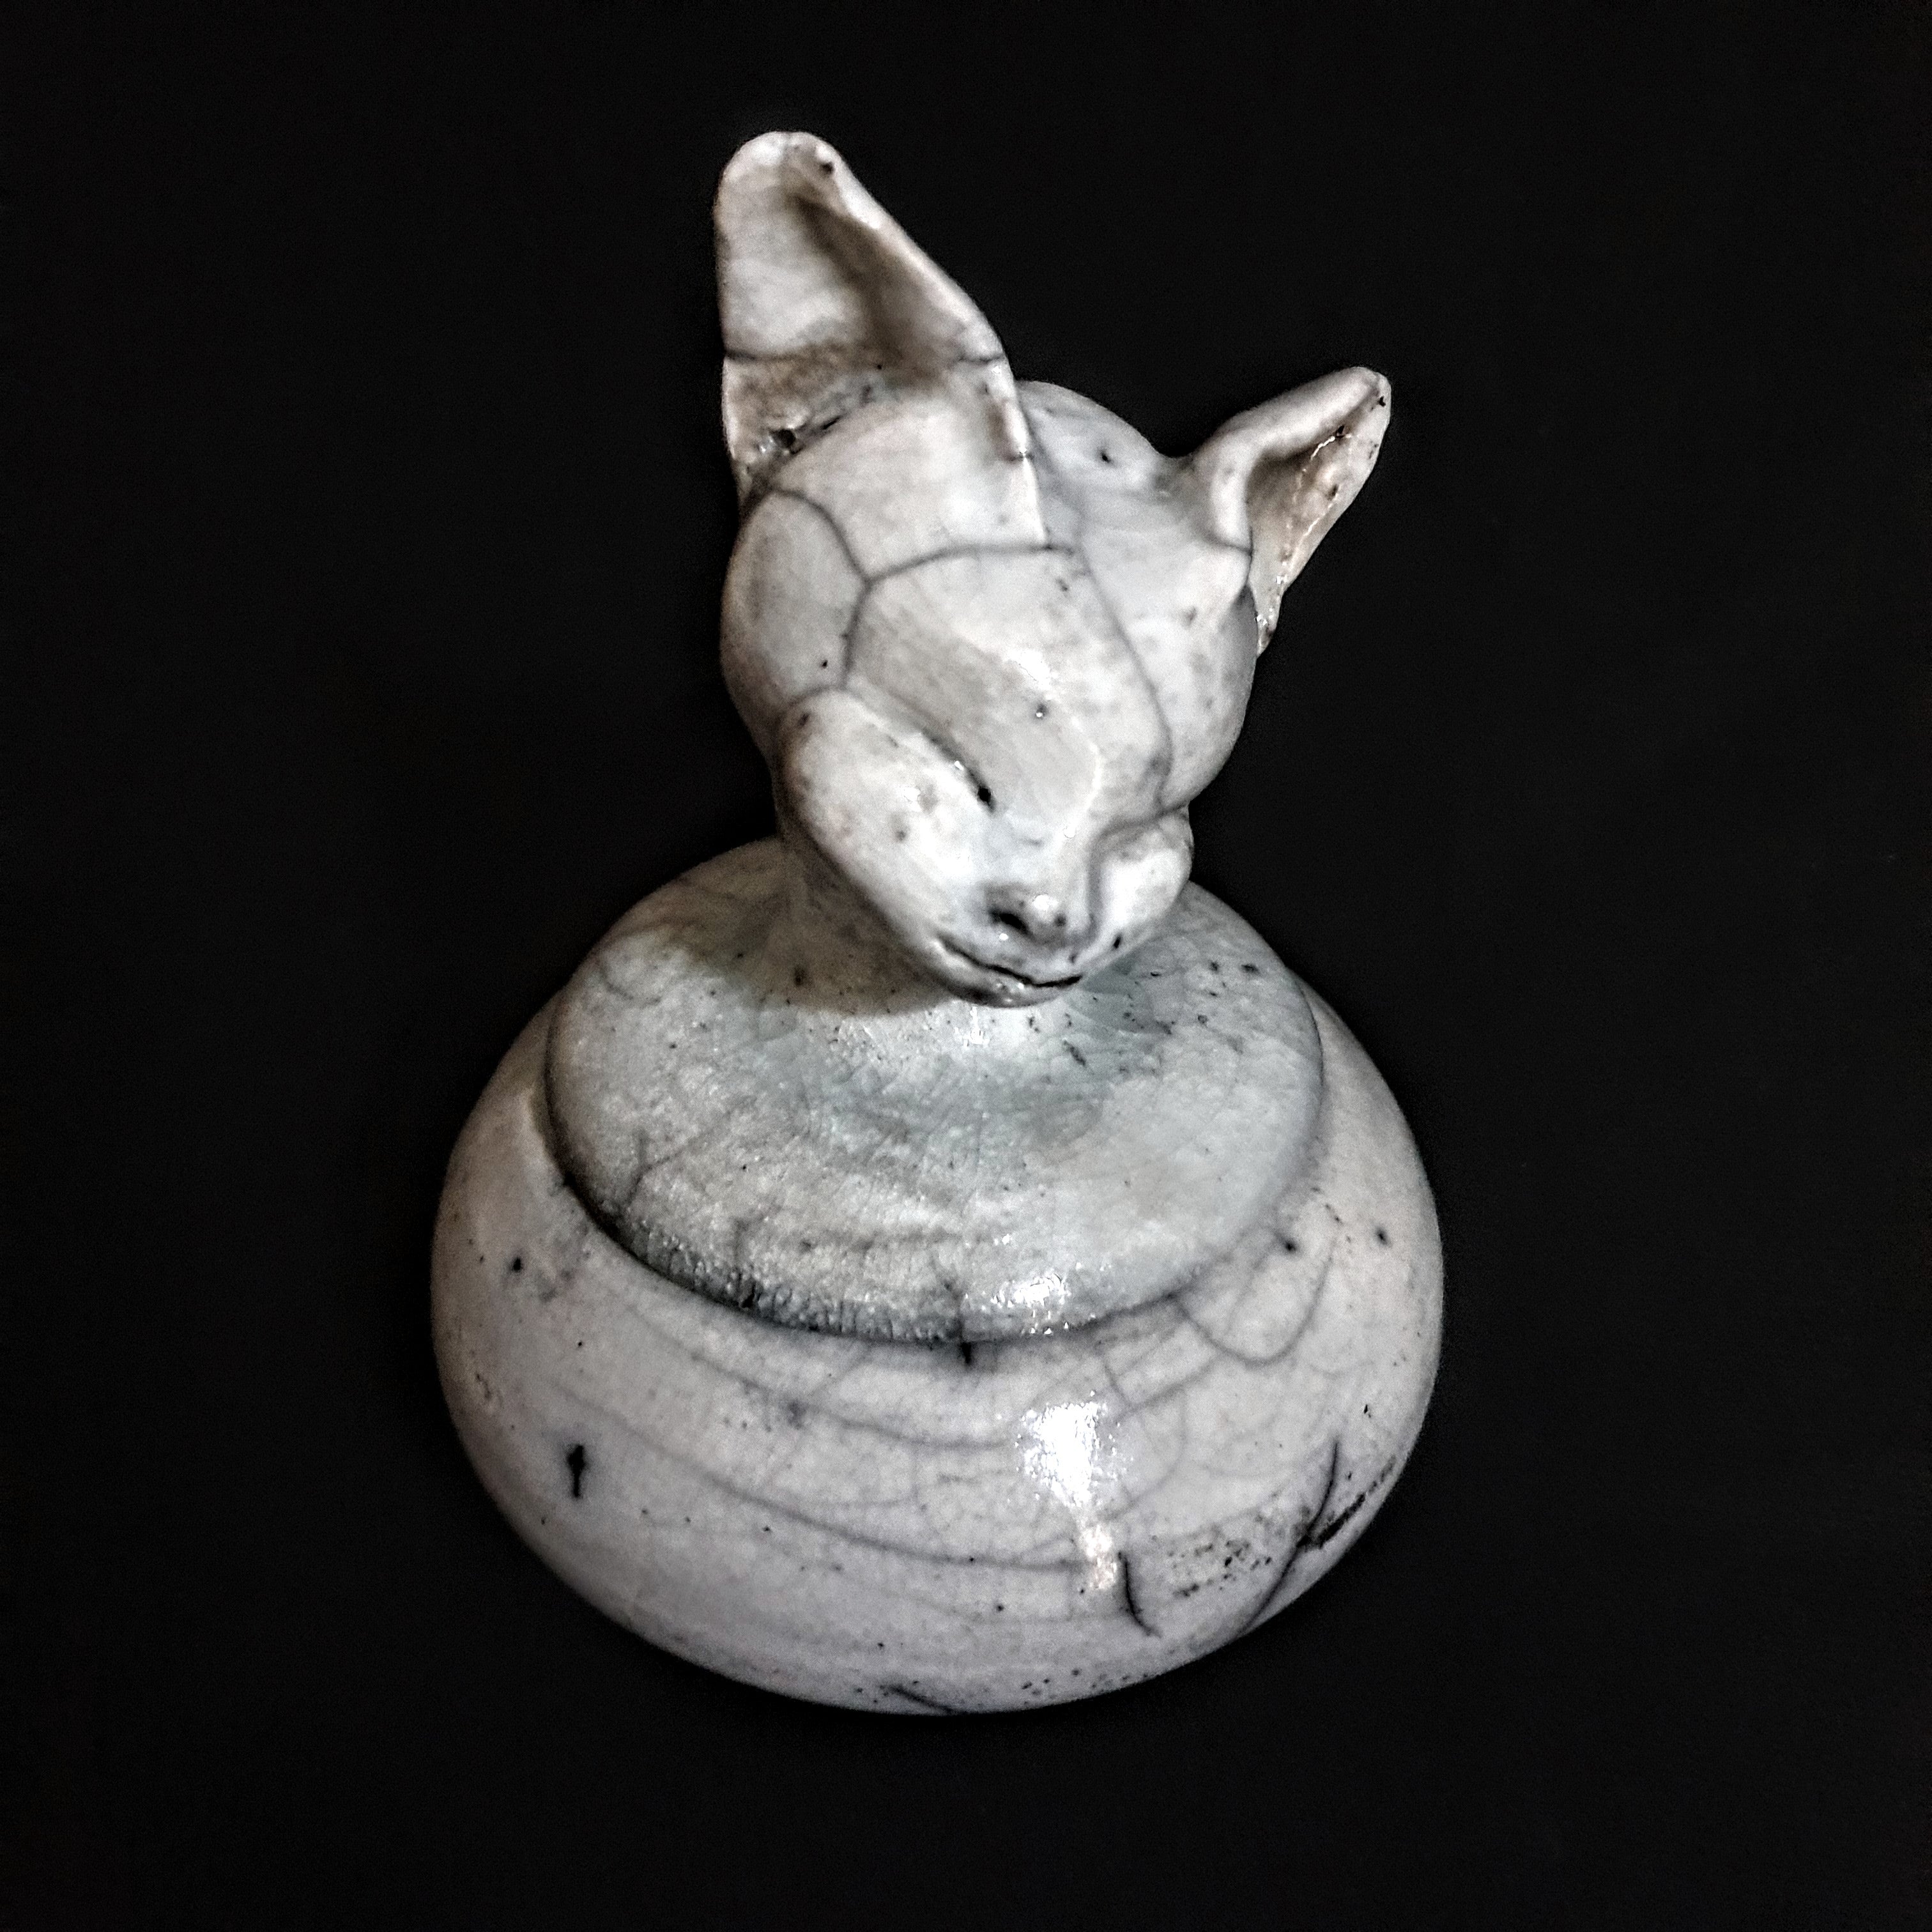 Cat Figurine Keepsake Pet Urn | Cremation Urn For Human Or Pet Ashes | Unique Urn for Cat | Urn for Ashes | Artistic urn | Wabi Sabi Urn